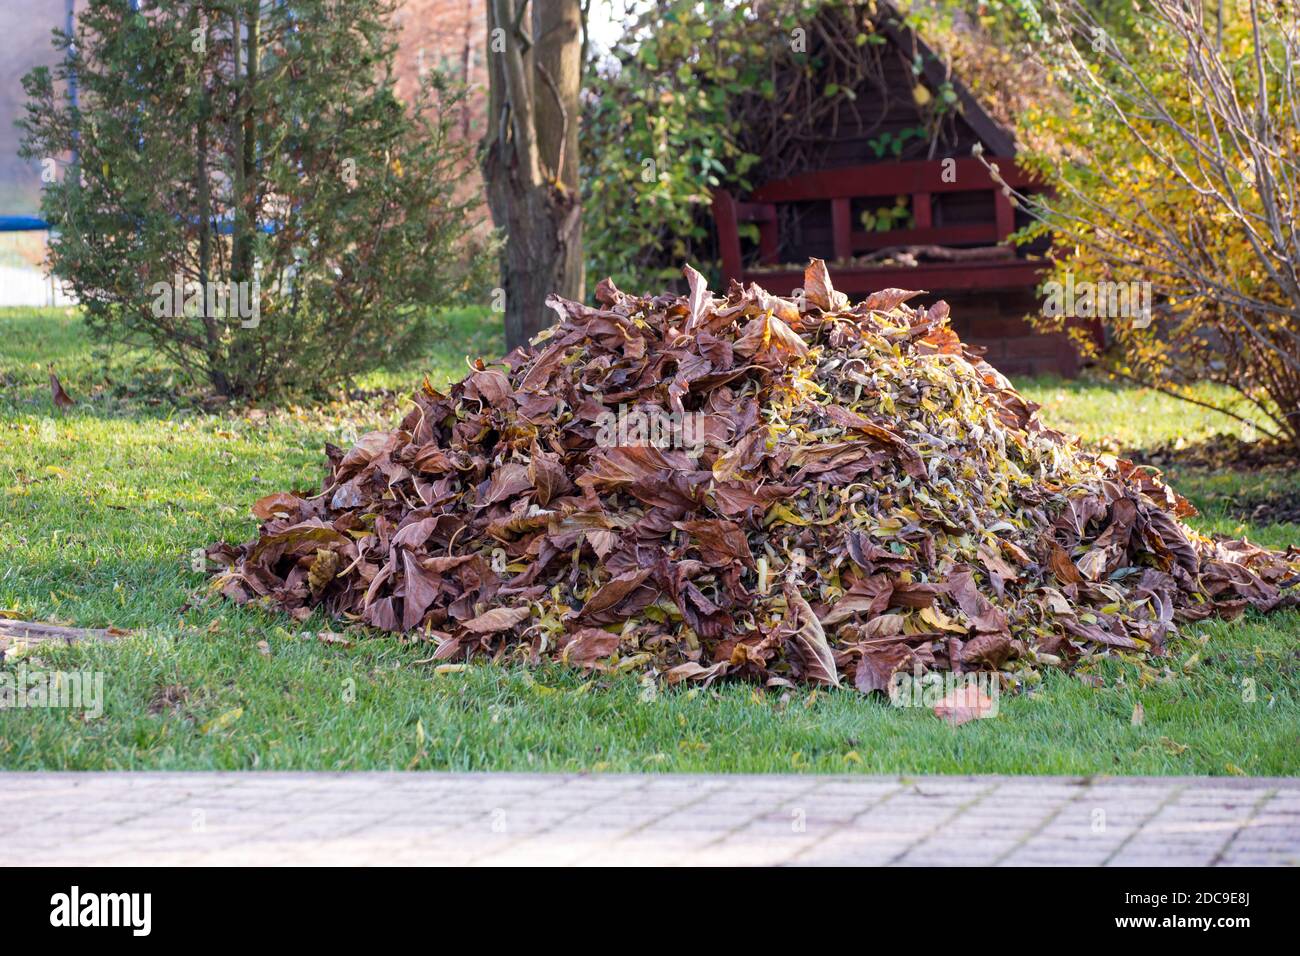 Geharkt Laubhaufen auf dem Gras im Garten. Herbstgartenarbeit an sonnigen Tagen. Stockfoto